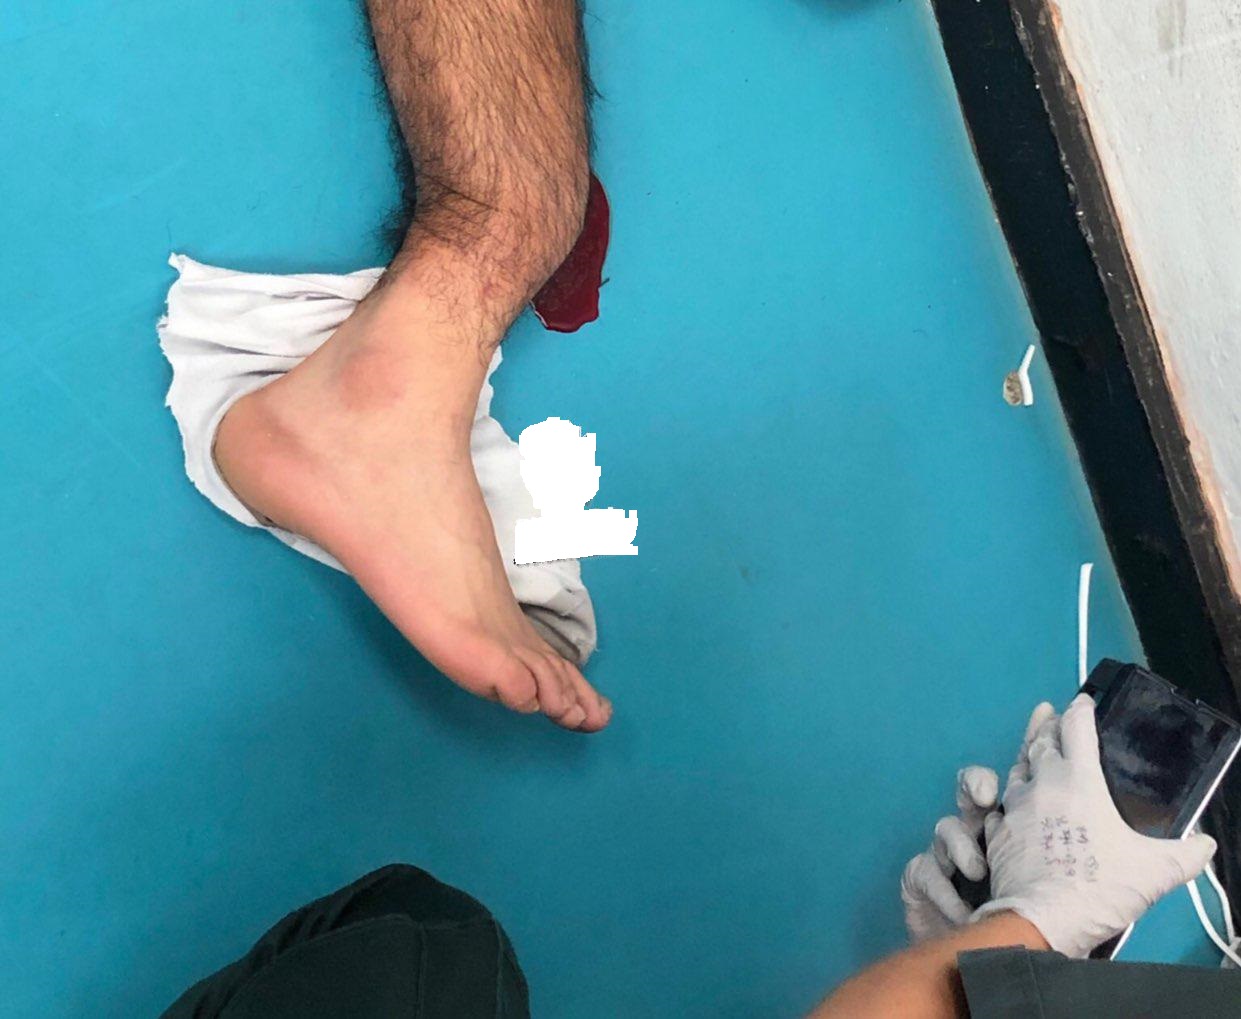 اولین تصویر از پای له شده گومز بعد از اتمام بازی